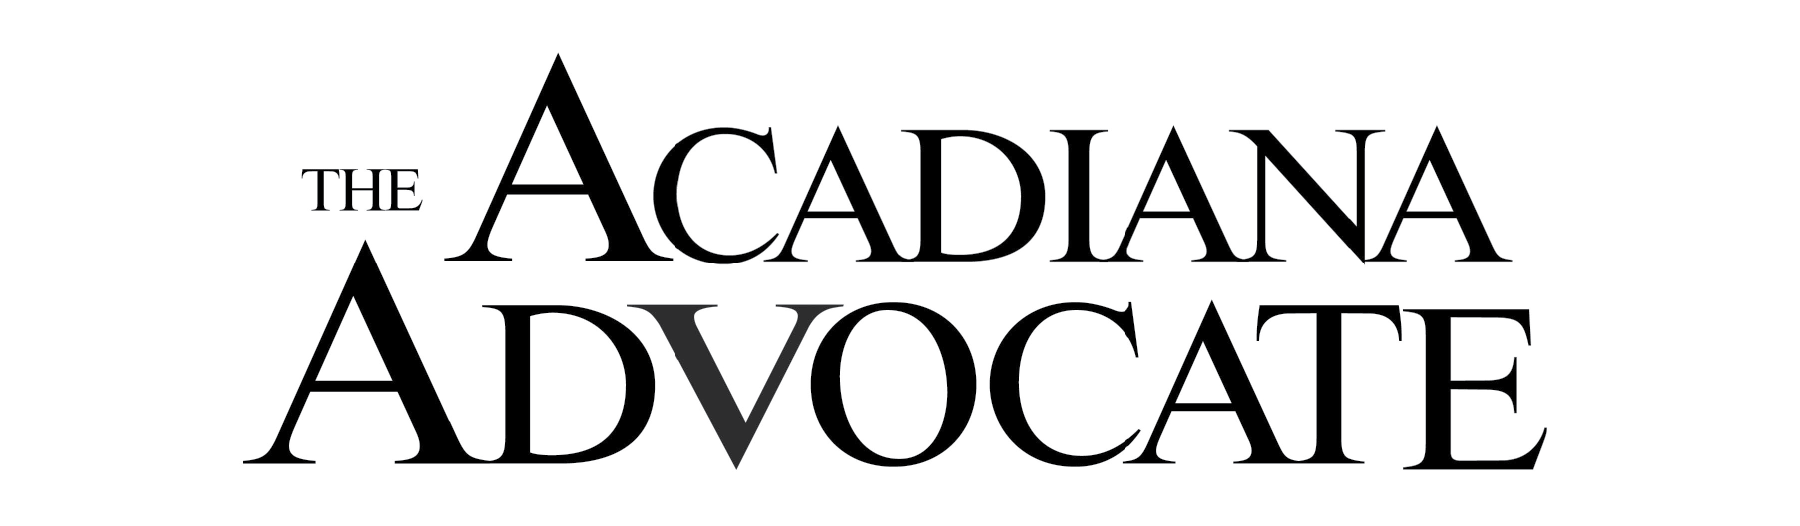 Acadiana Advocate no tag